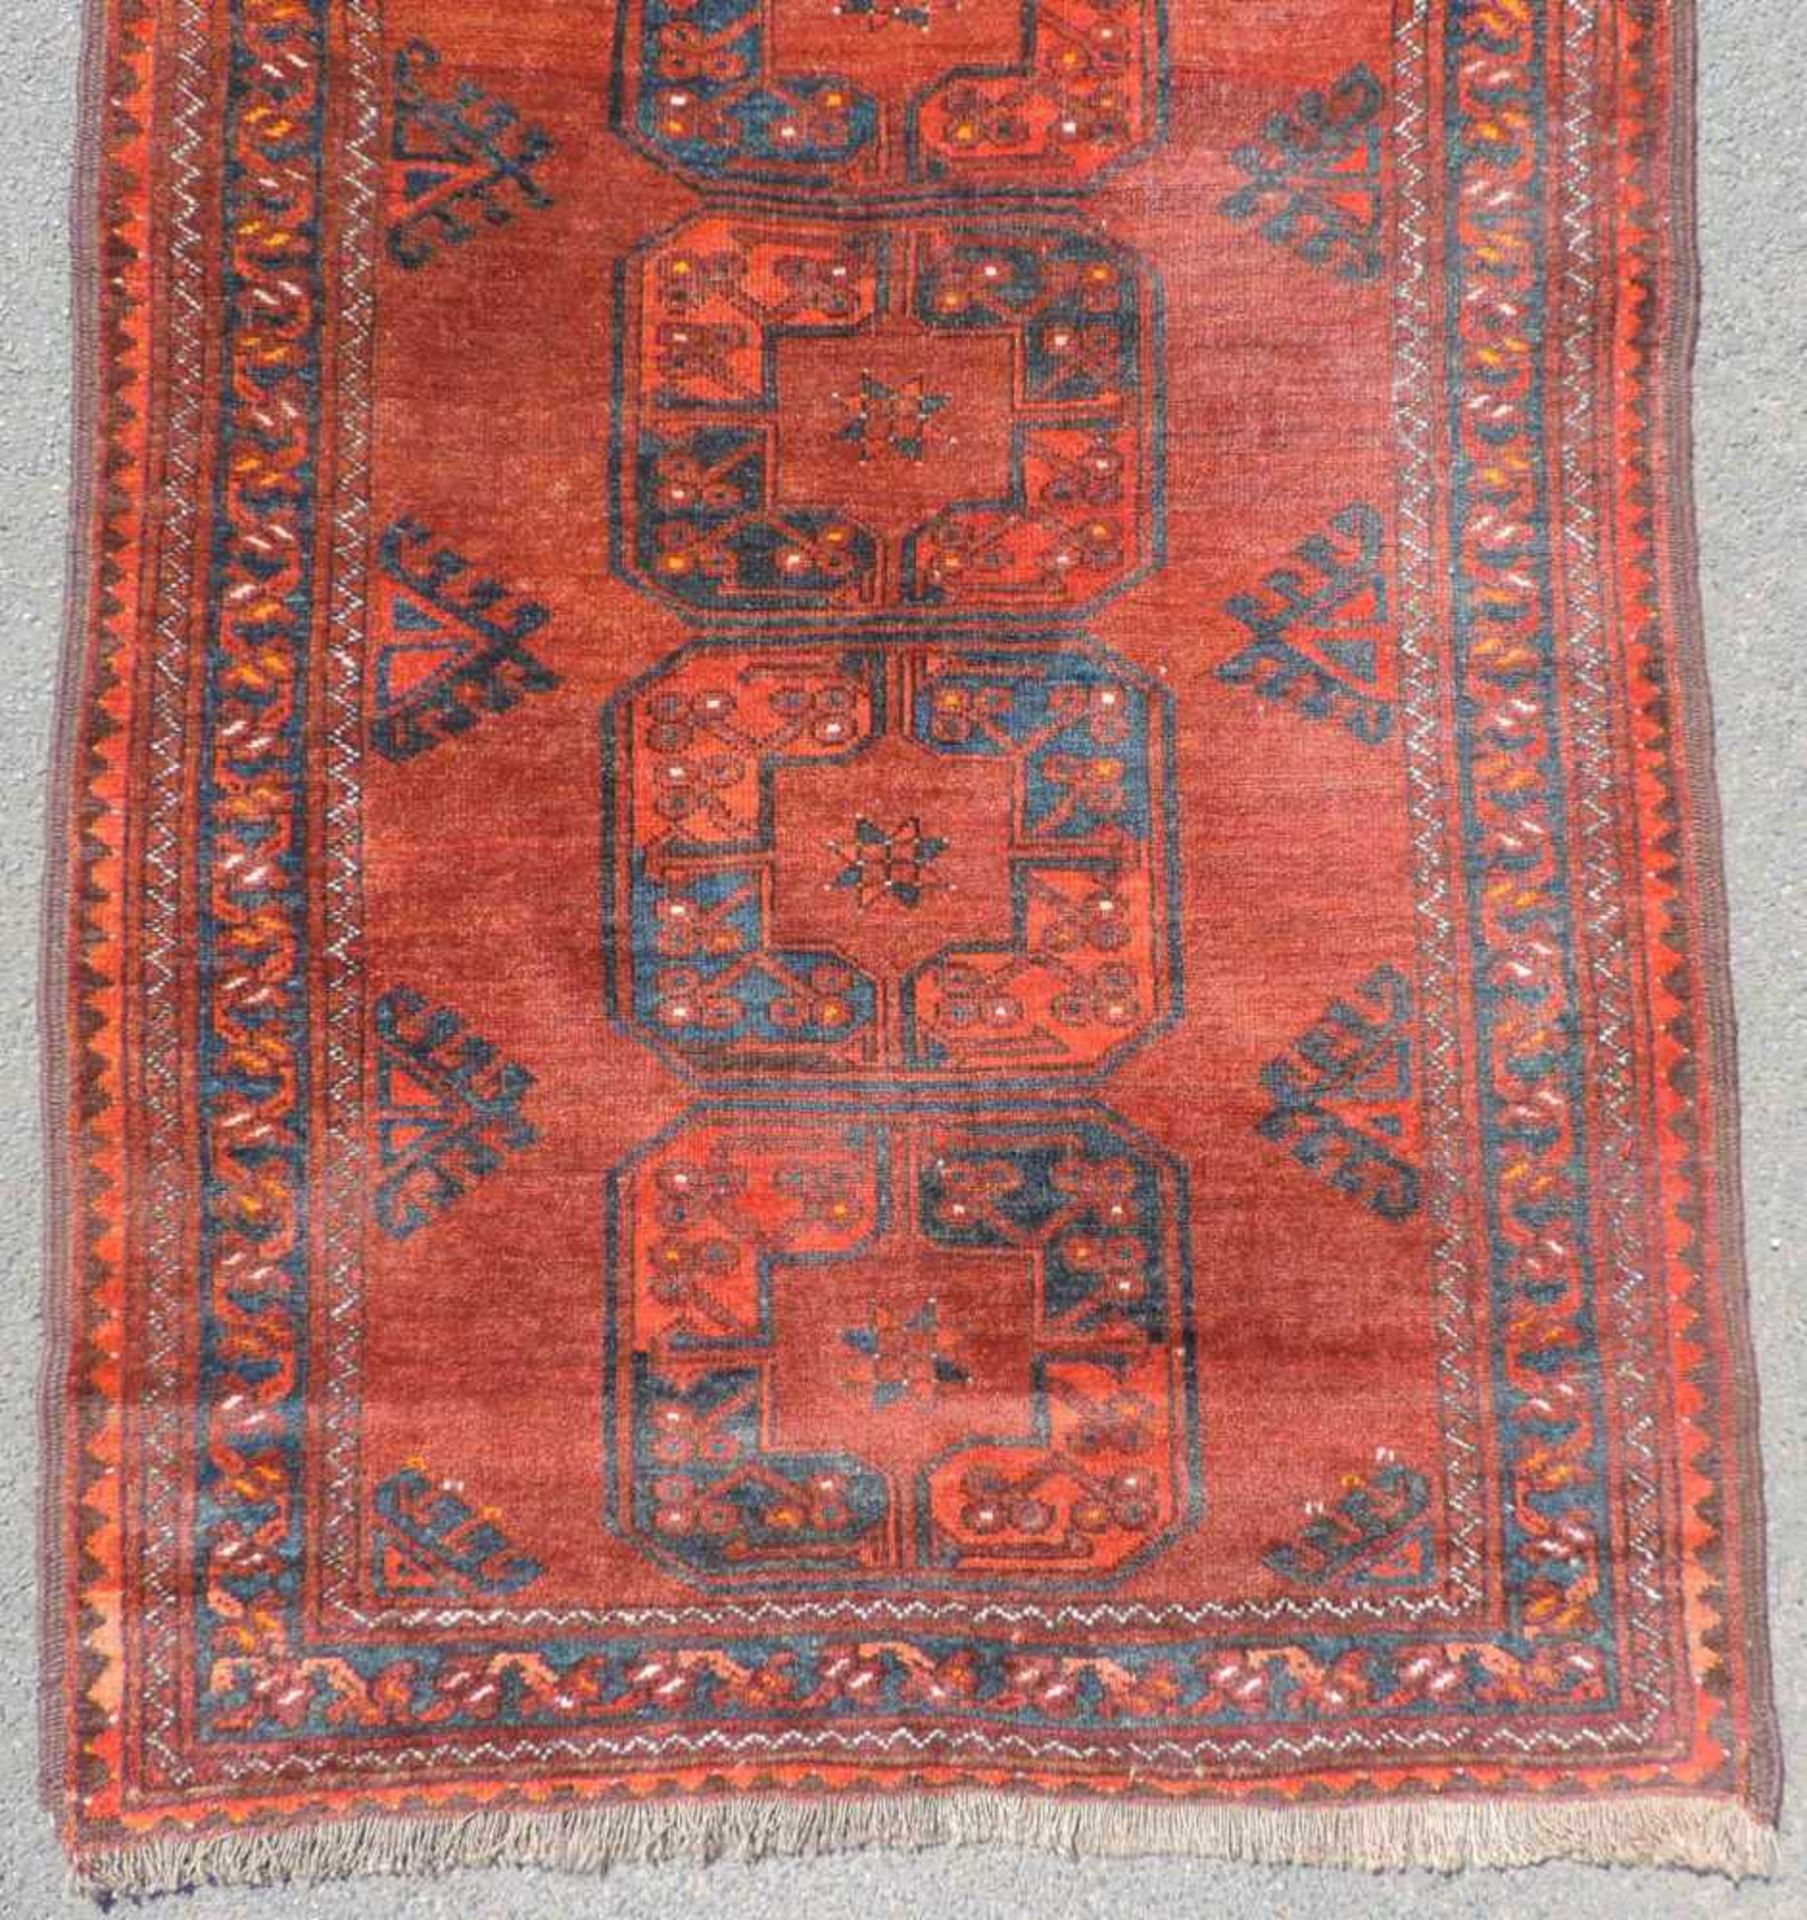 Ersari Stammesteppich. Turkmenistan. Antik um 1910. 193 cm x 102 cm. Orientteppich. Handgeknüpft. - Bild 2 aus 5